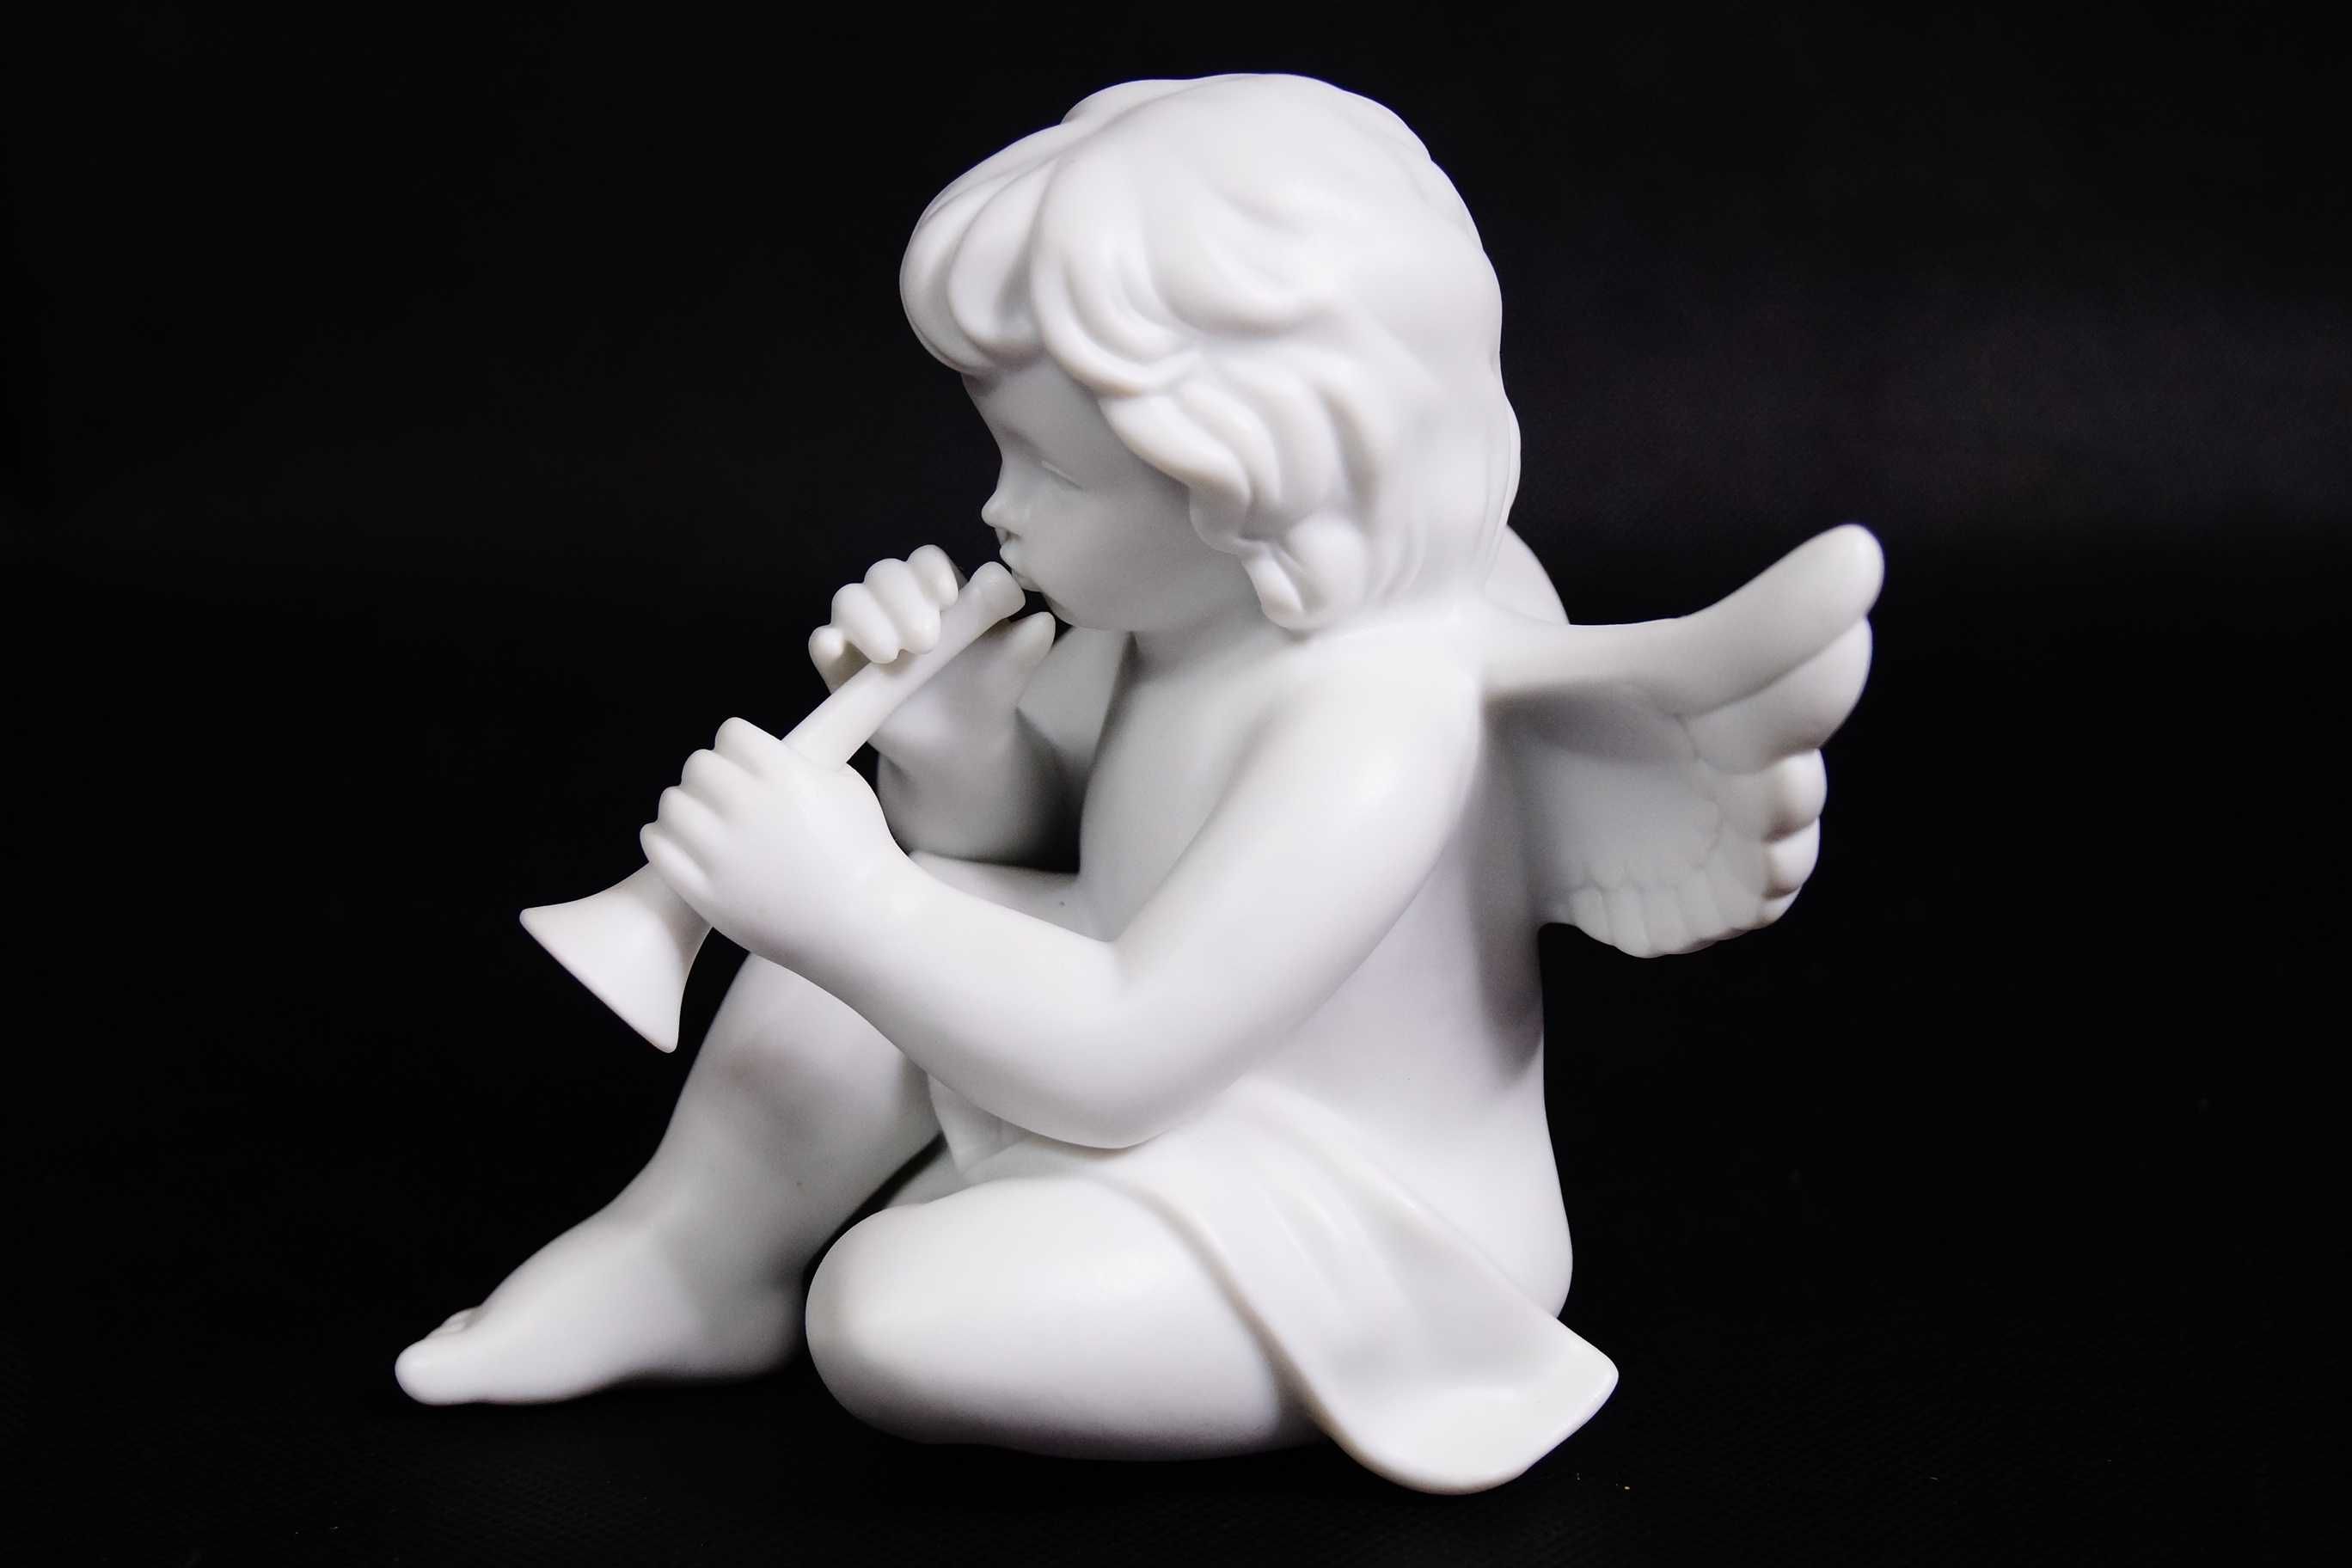 Aniołek figura porcelanowa Rosenthal biskwitowa